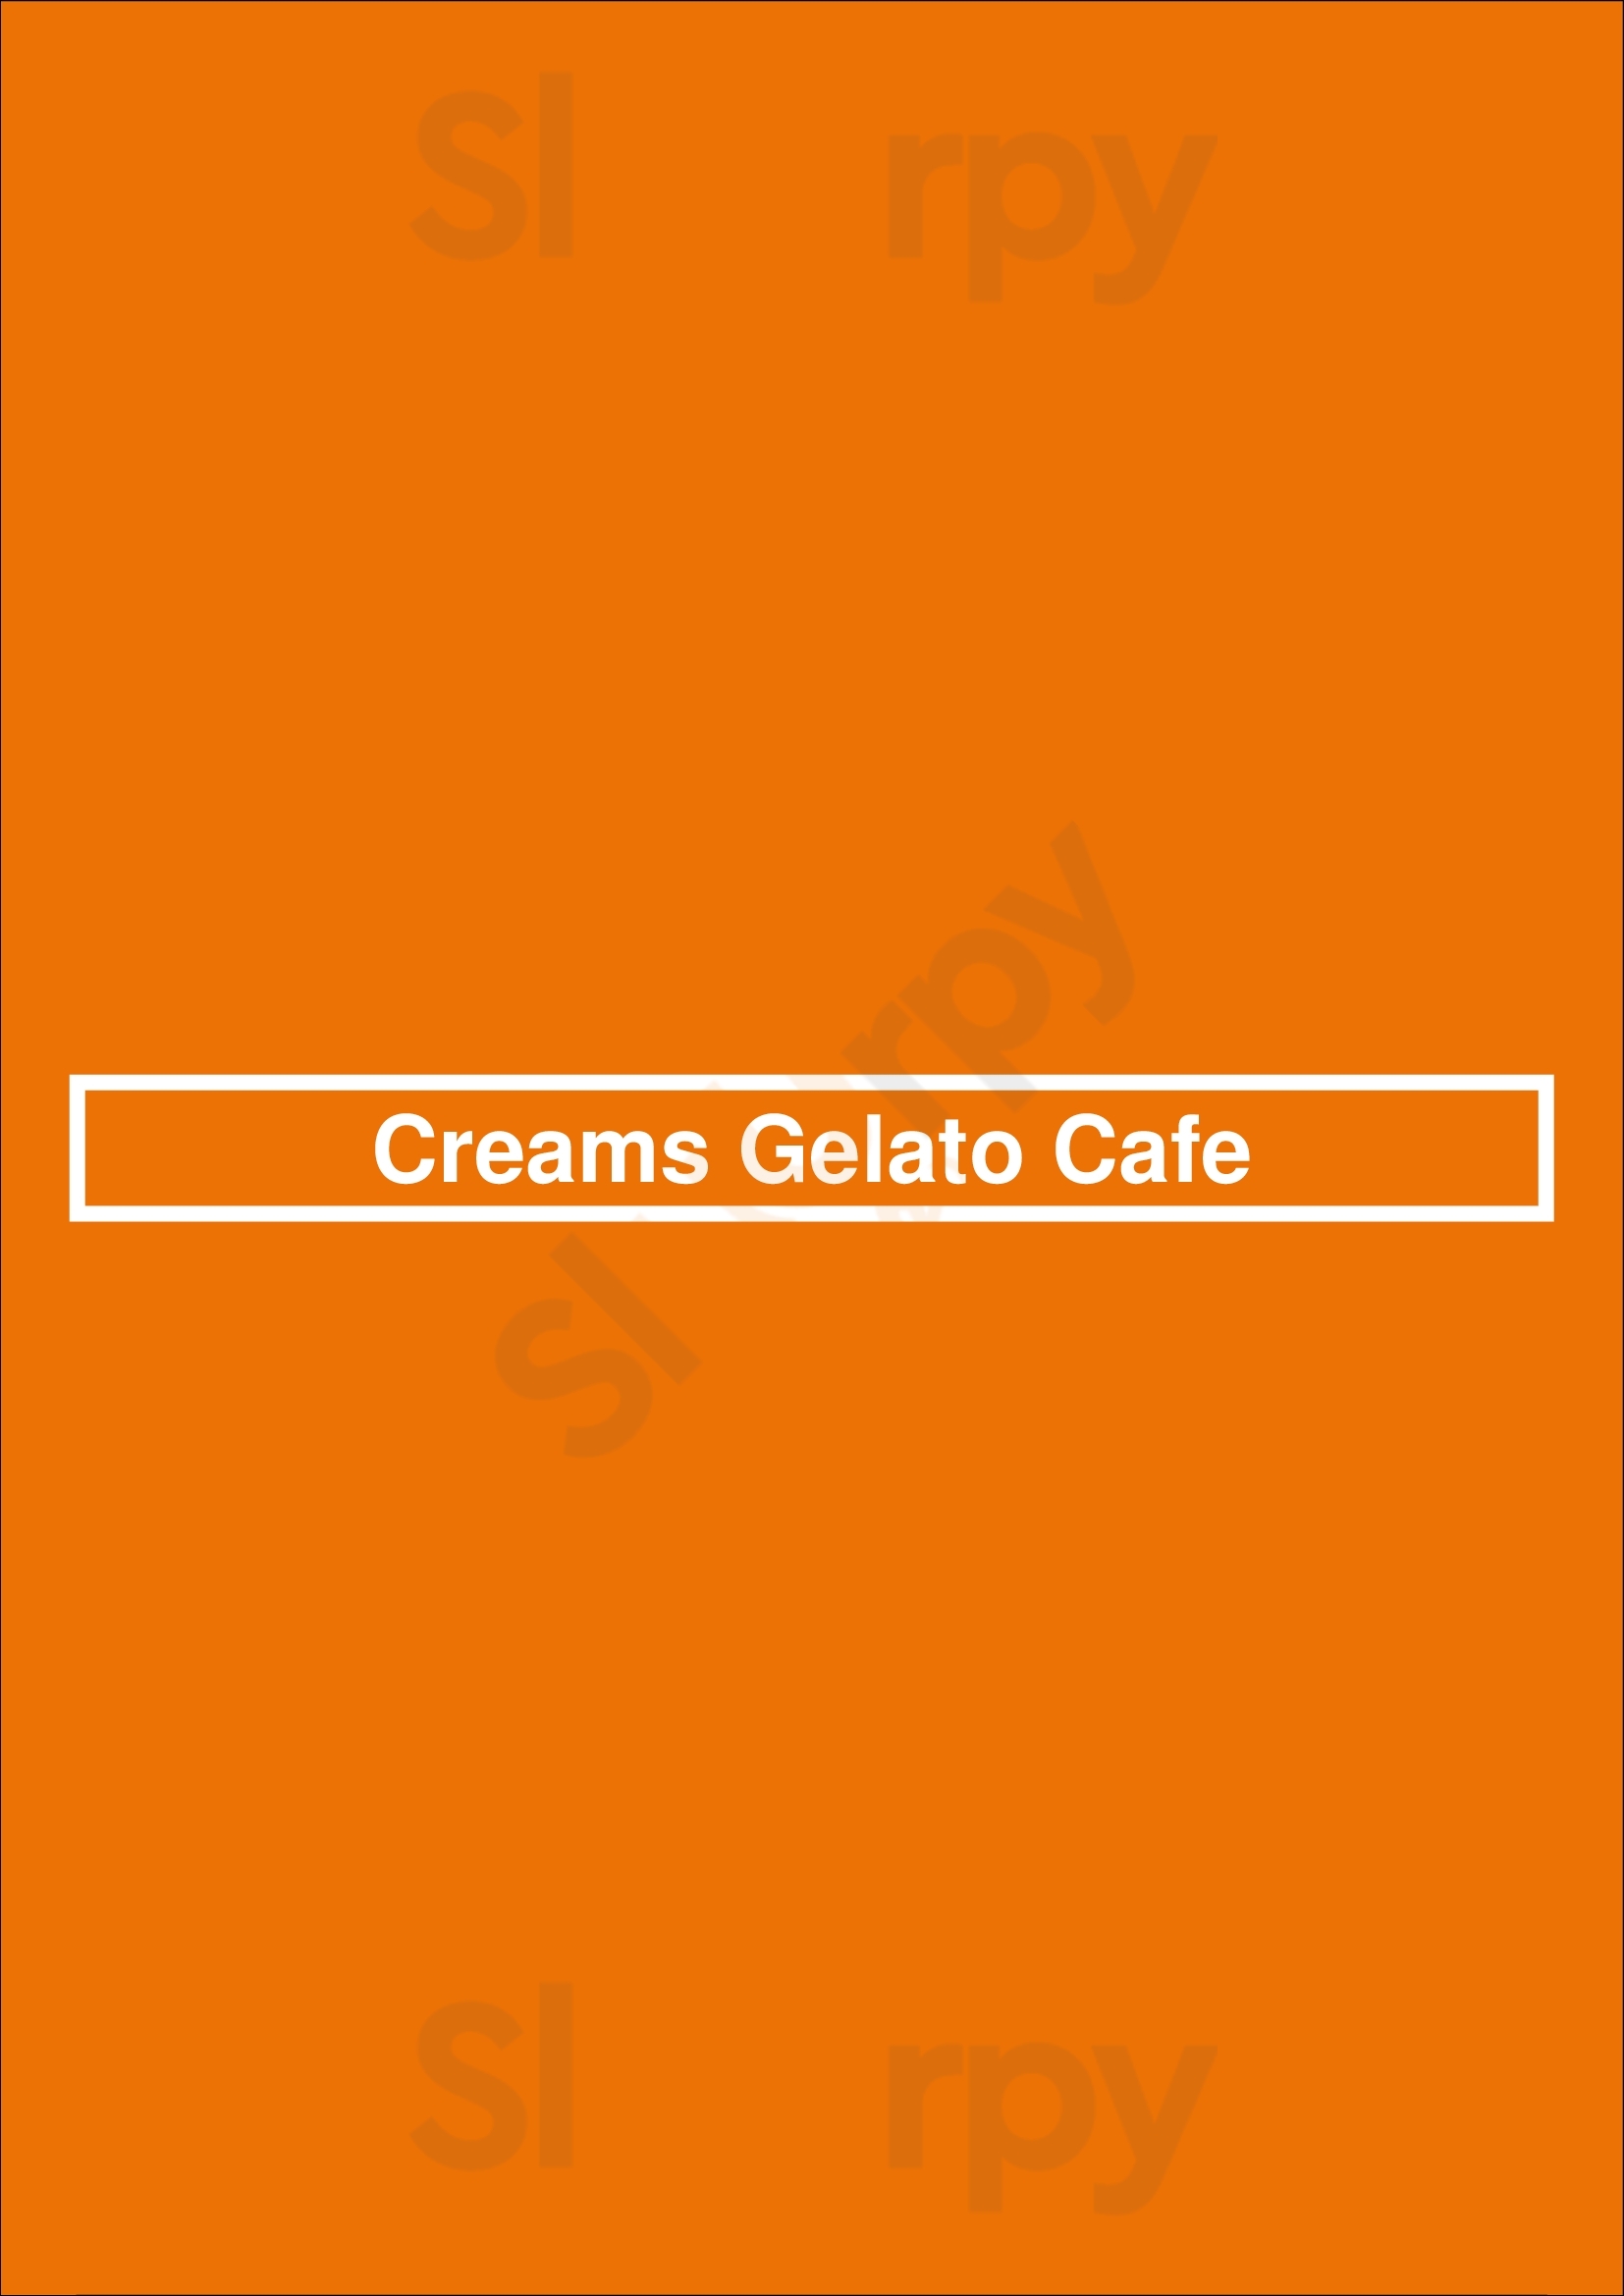 Creams Gelato Cafe Enfield Menu - 1